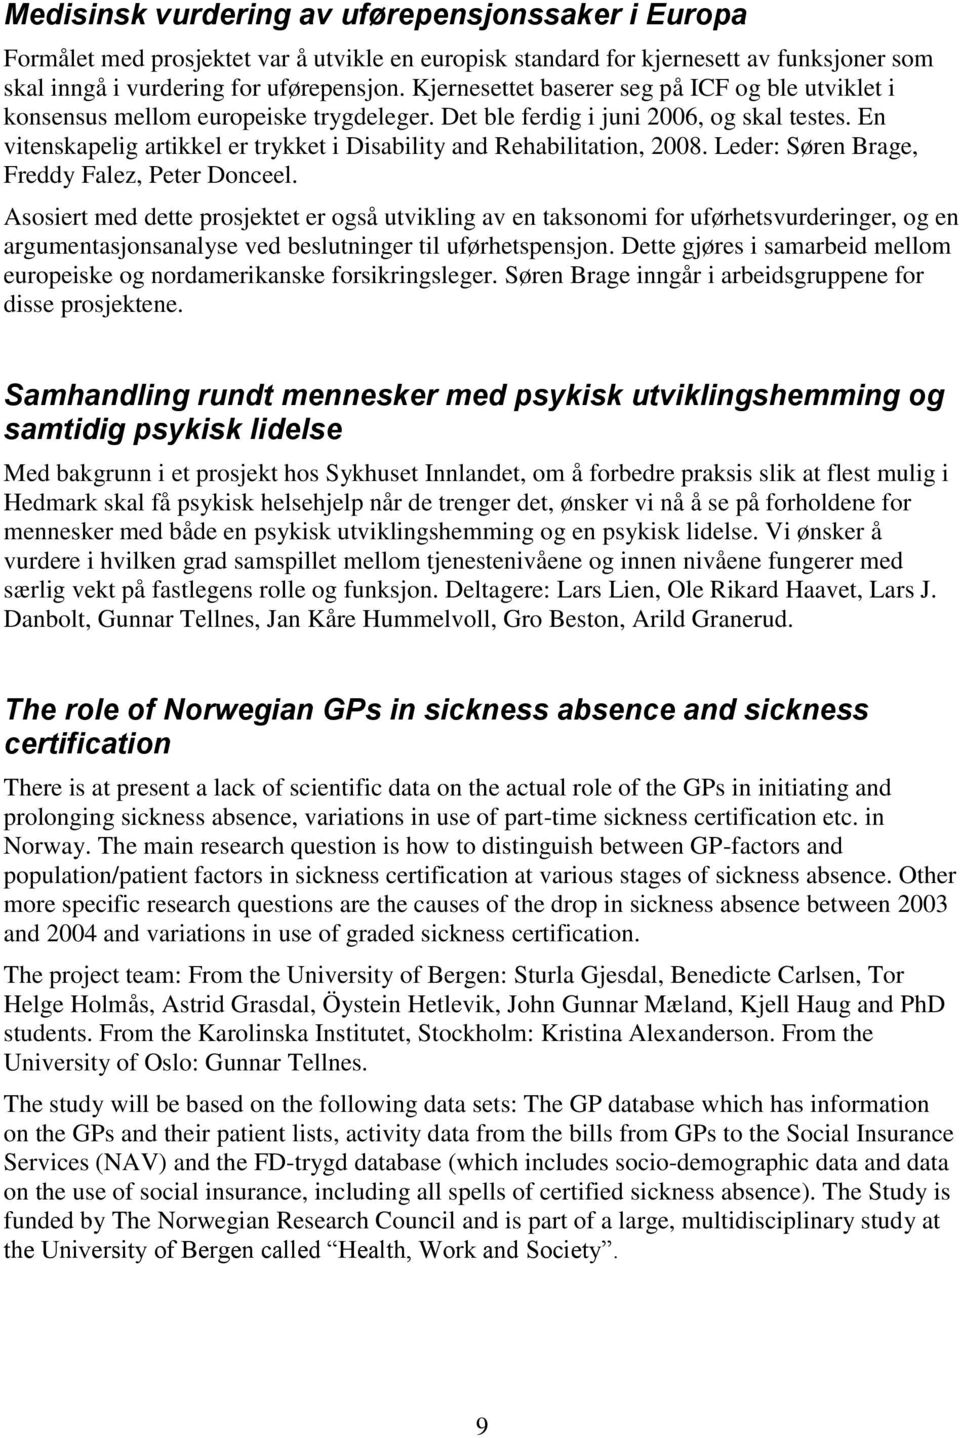 En vitenskapelig artikkel er trykket i Disability and Rehabilitation, 2008. Leder: Søren Brage, Freddy Falez, Peter Donceel.